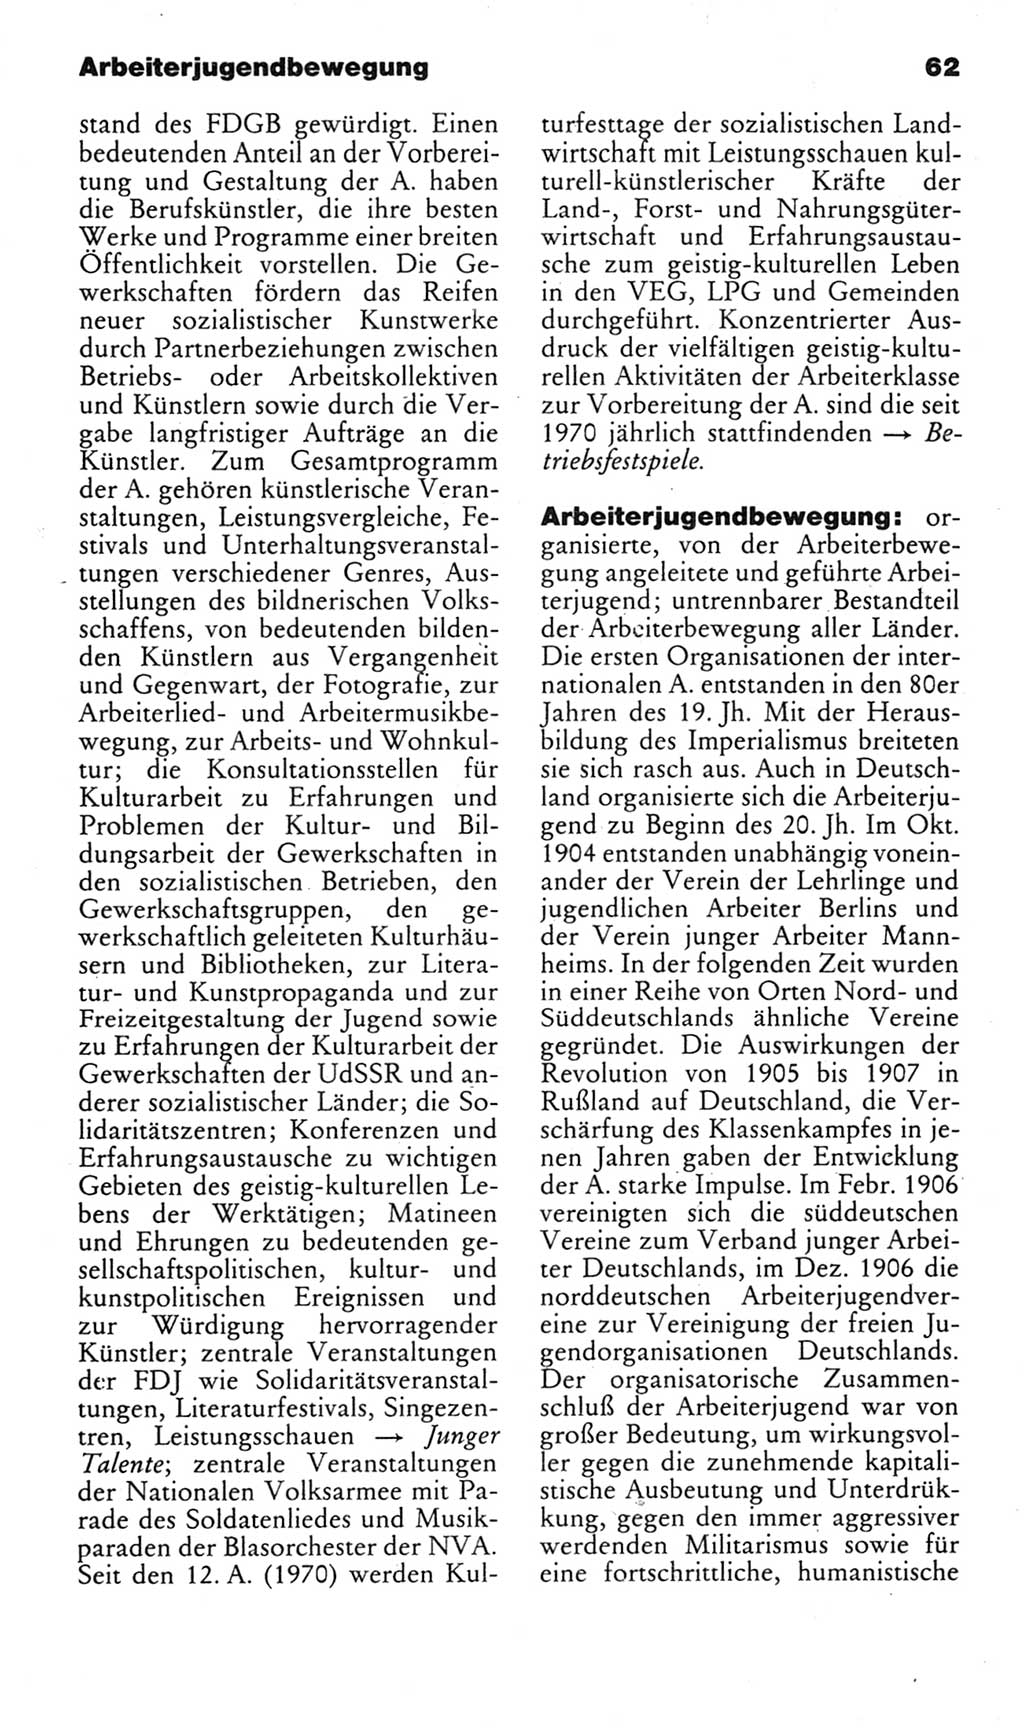 Kleines politisches Wörterbuch [Deutsche Demokratische Republik (DDR)] 1983, Seite 62 (Kl. pol. Wb. DDR 1983, S. 62)